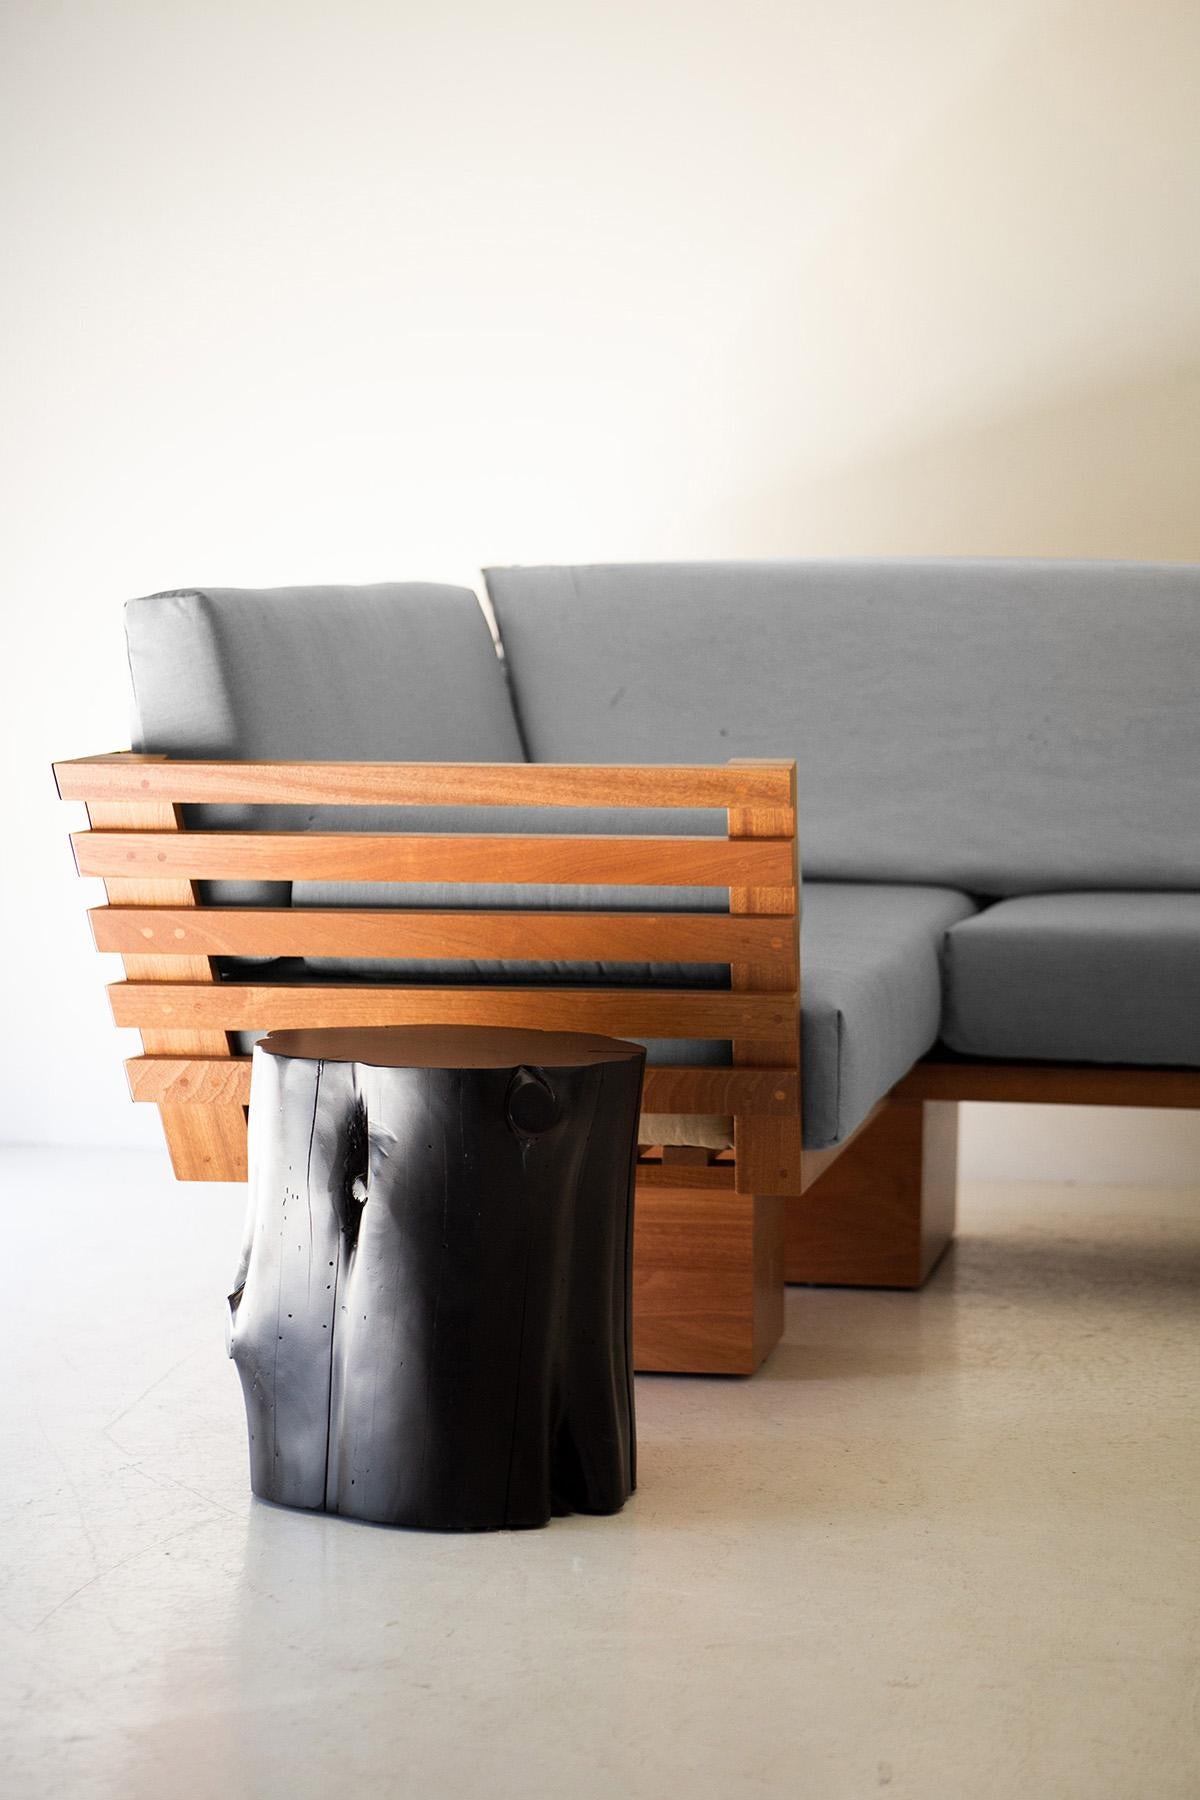 Die Suelo Slatted Outdoor Sectional - 4522 wurde in Ohio, USA, aus Massivholz gefertigt. Die Silhouette dieser Sitzecke ist schlicht, modern und elegant, mit bequemen Rücken- und Sitzkissen. Der Holzrahmen ist für den Einsatz im Freien geeignet und